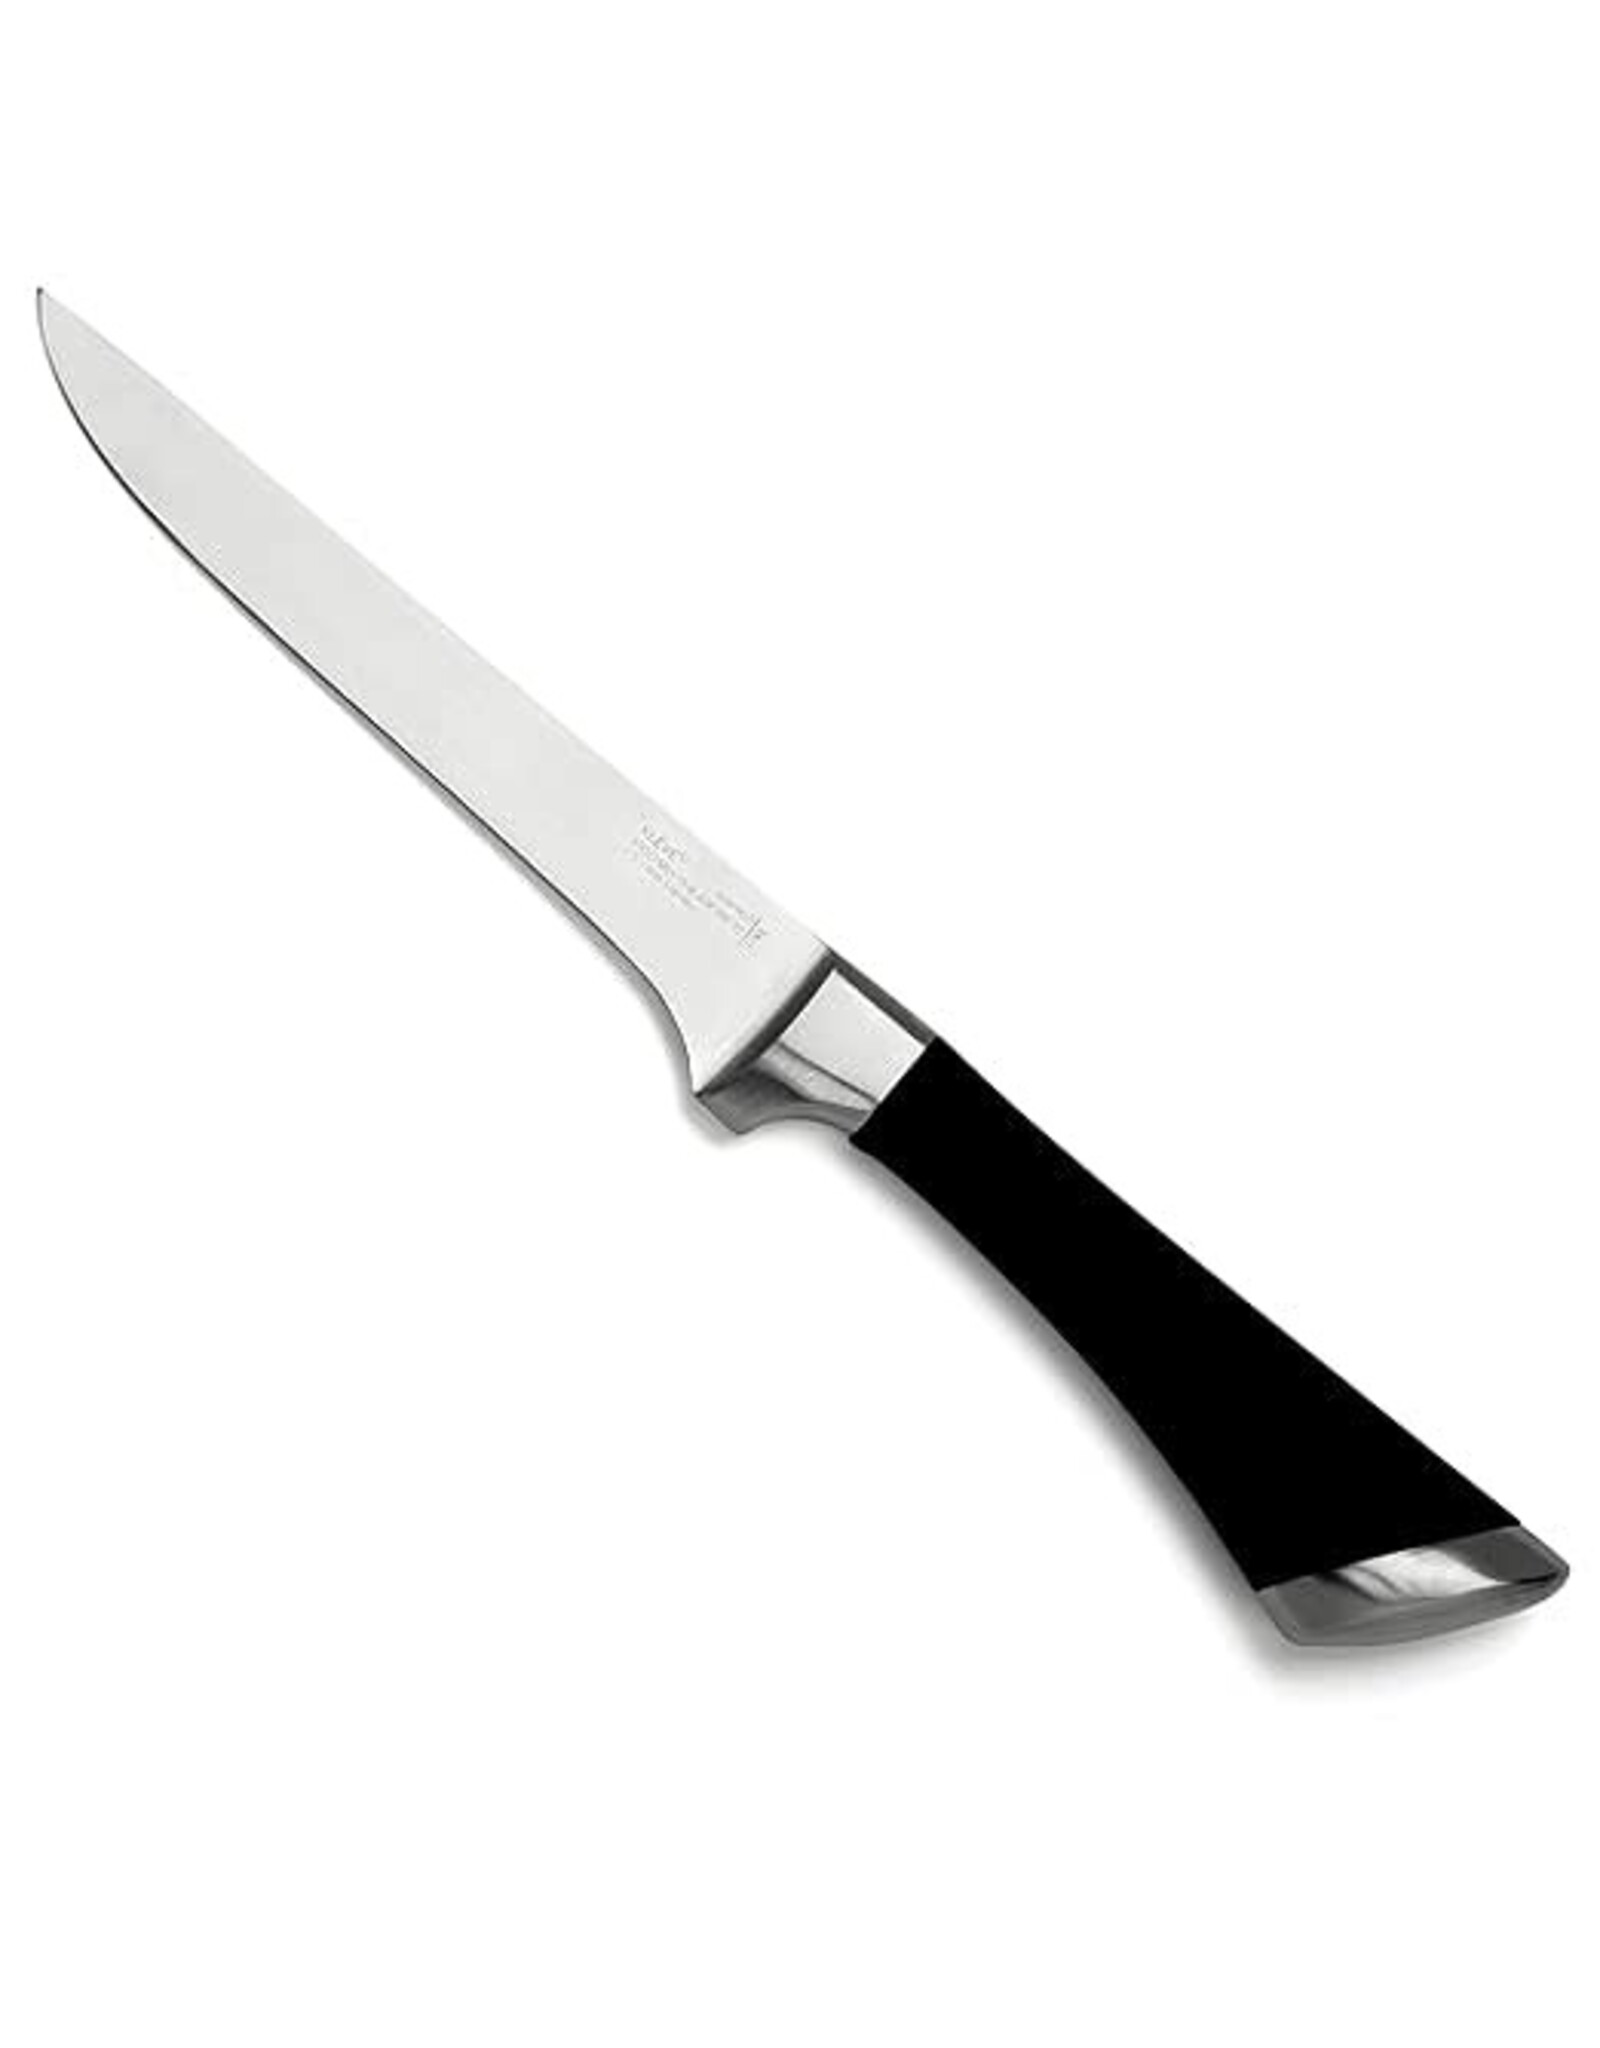 KLEVE Stainless Steel 6-Inch Boning Fillet Knife